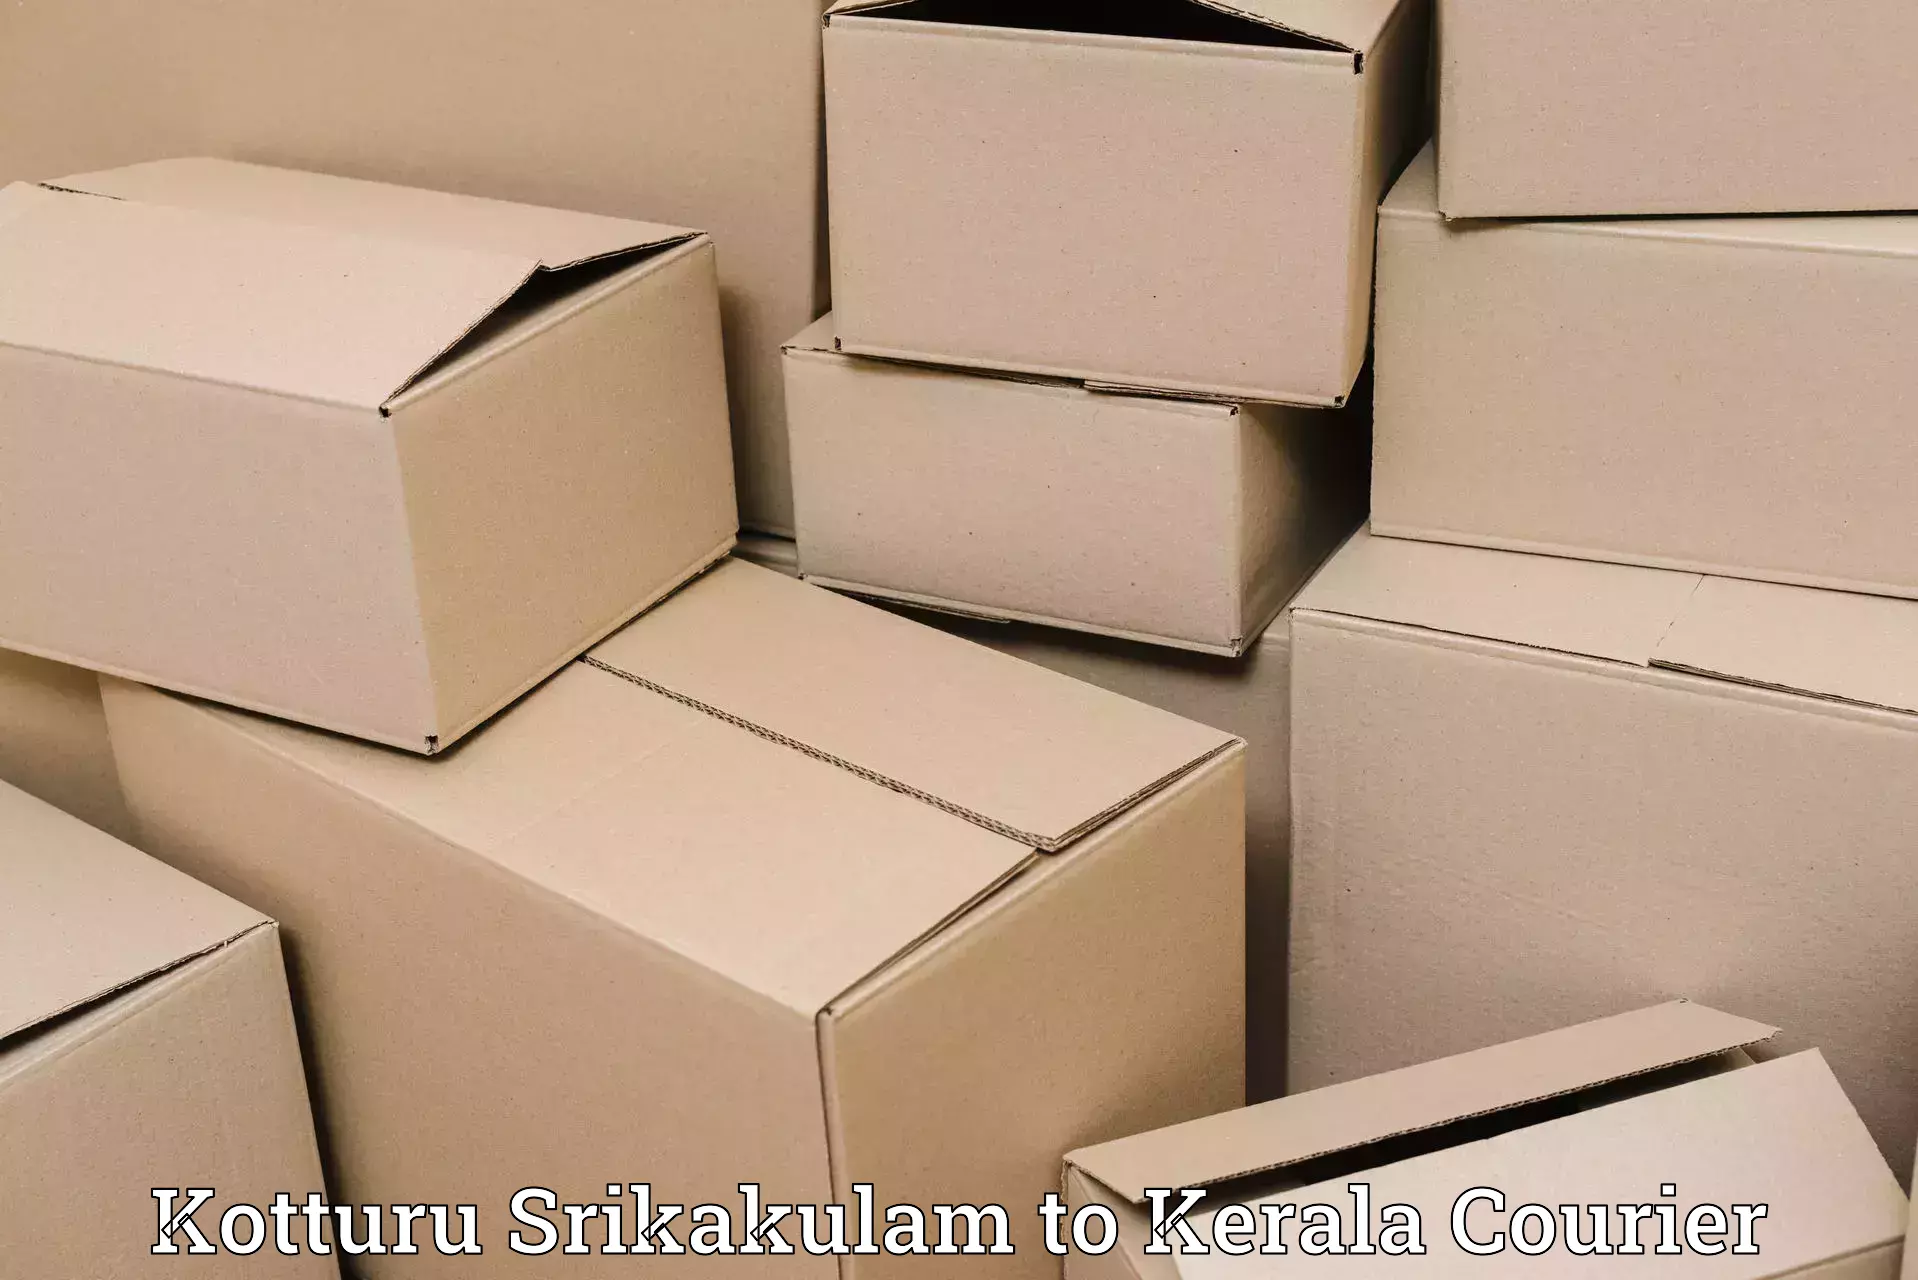 Global parcel delivery Kotturu Srikakulam to Manthuka